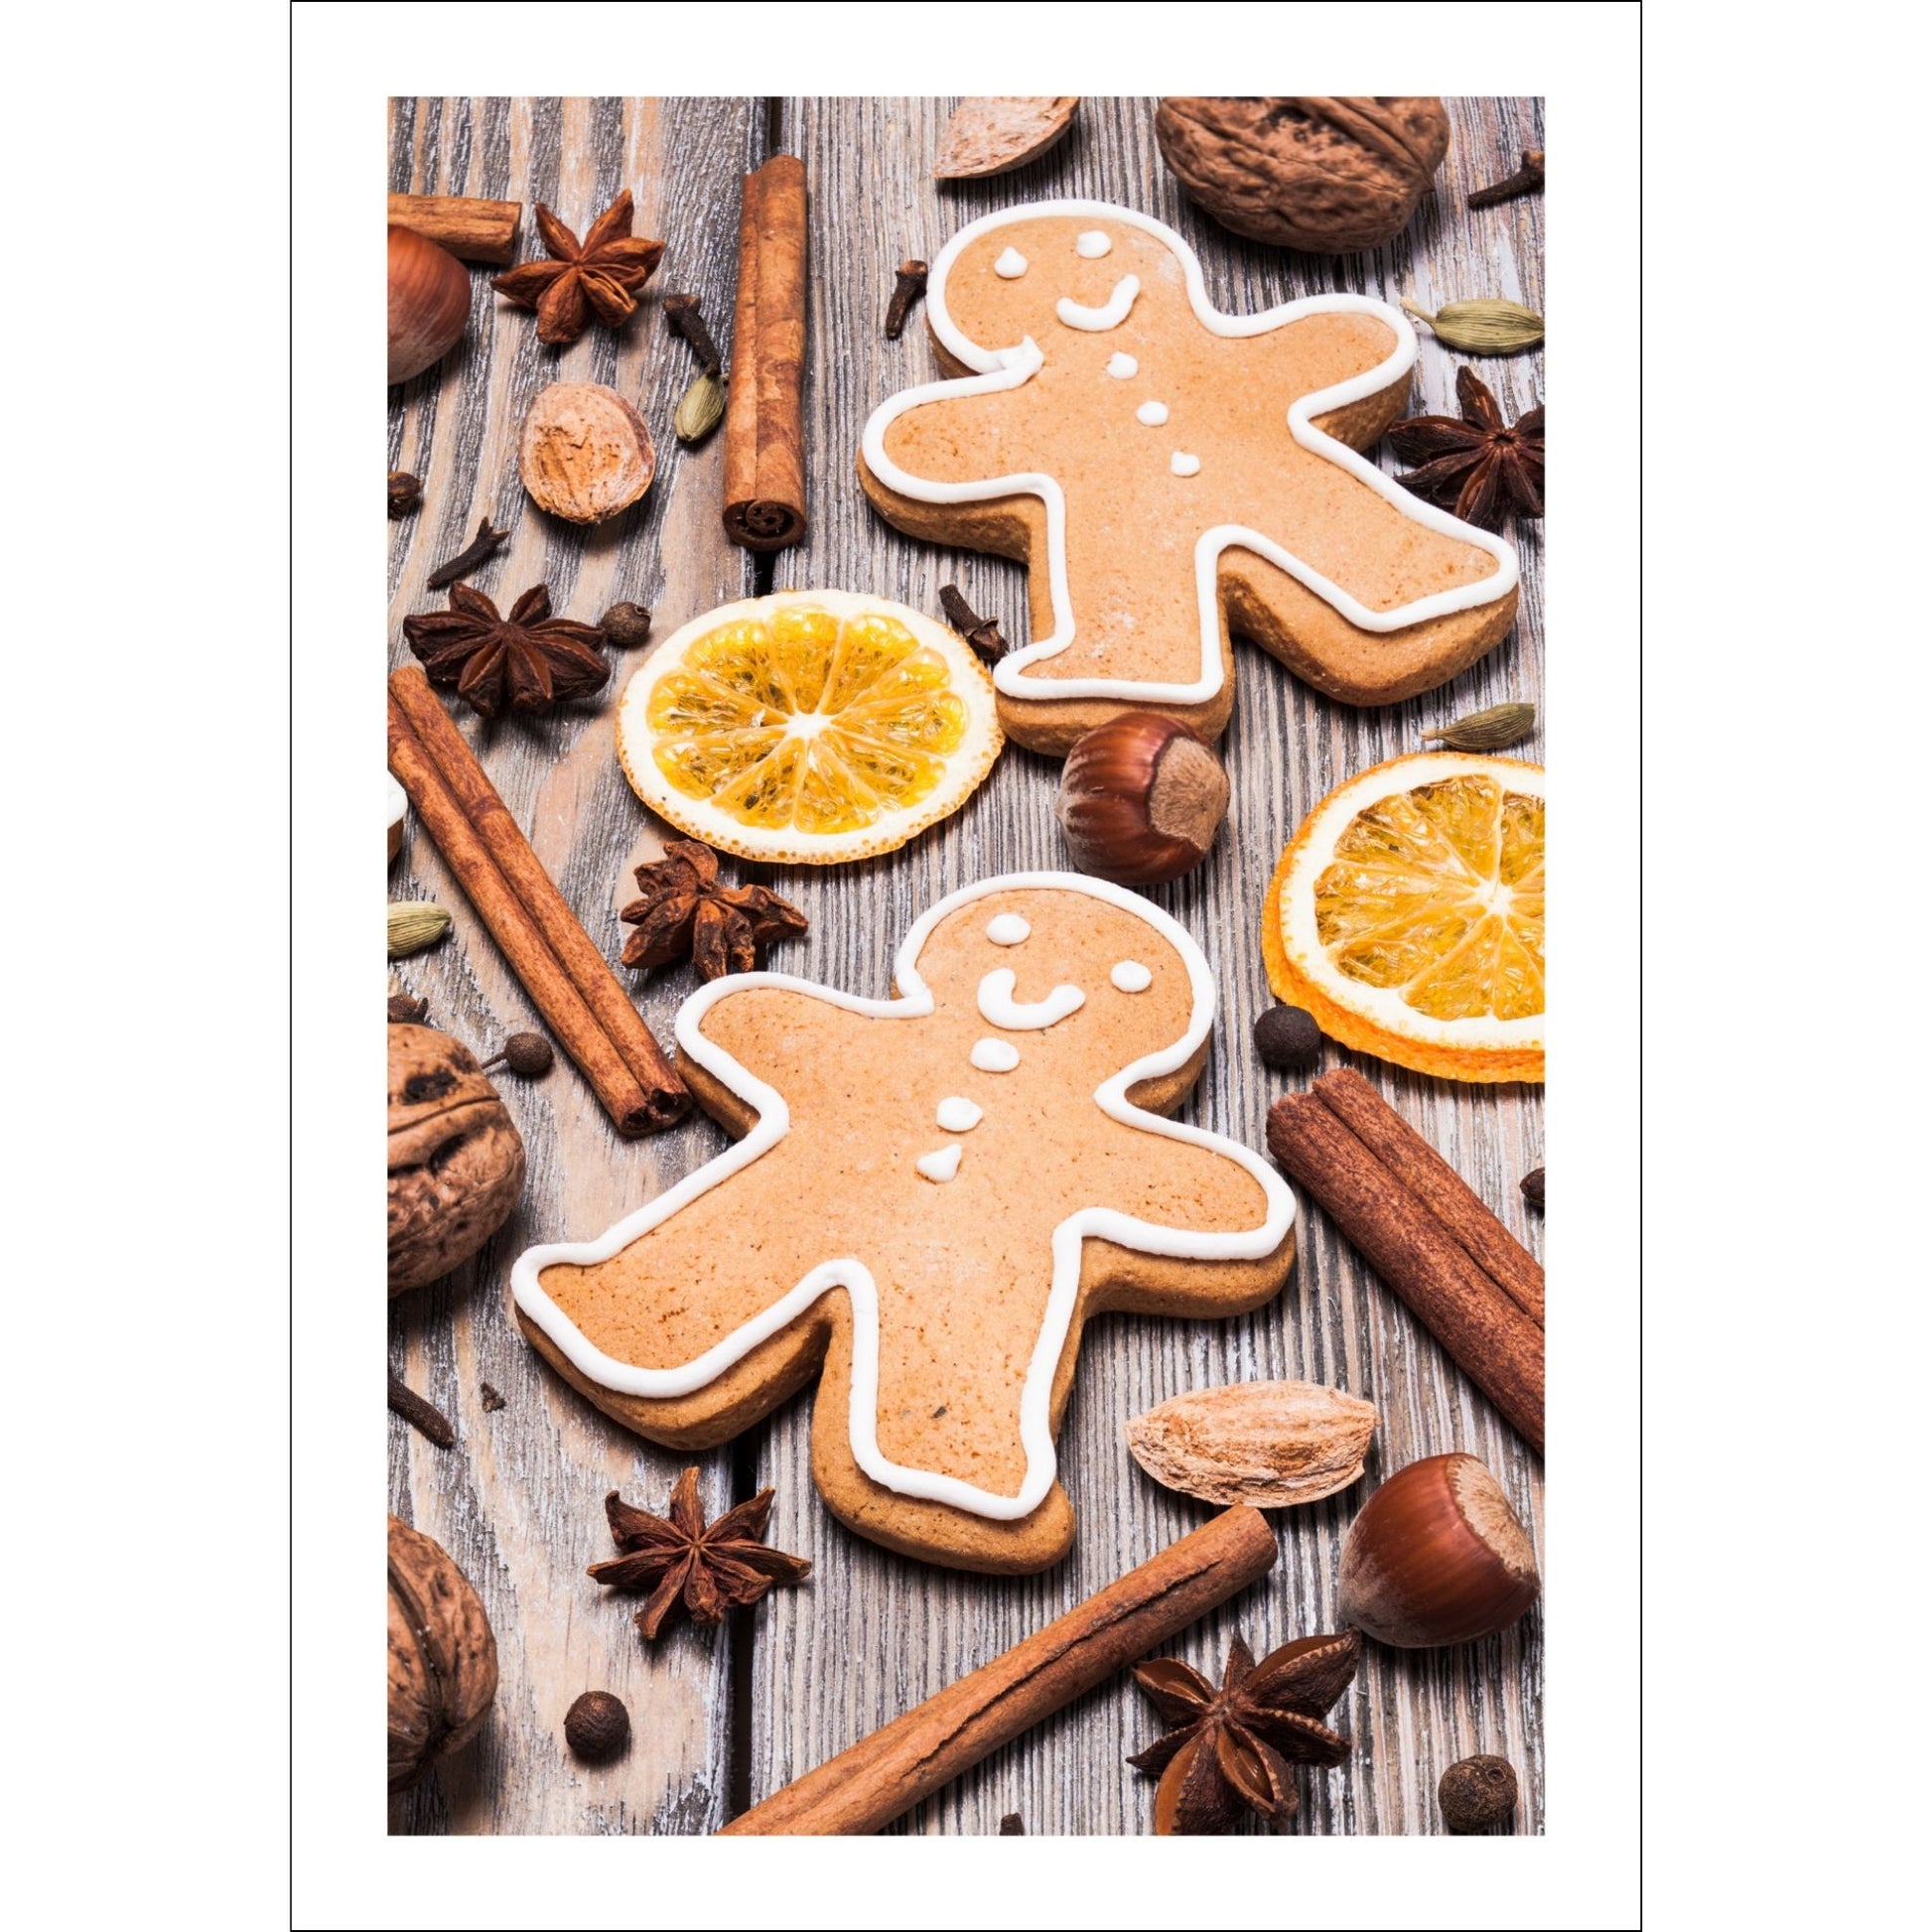 Plakat med dekorativt førjulsmotiv - pepperkaker, appelsin, kanel og stjerneanis, det som hører julen til.